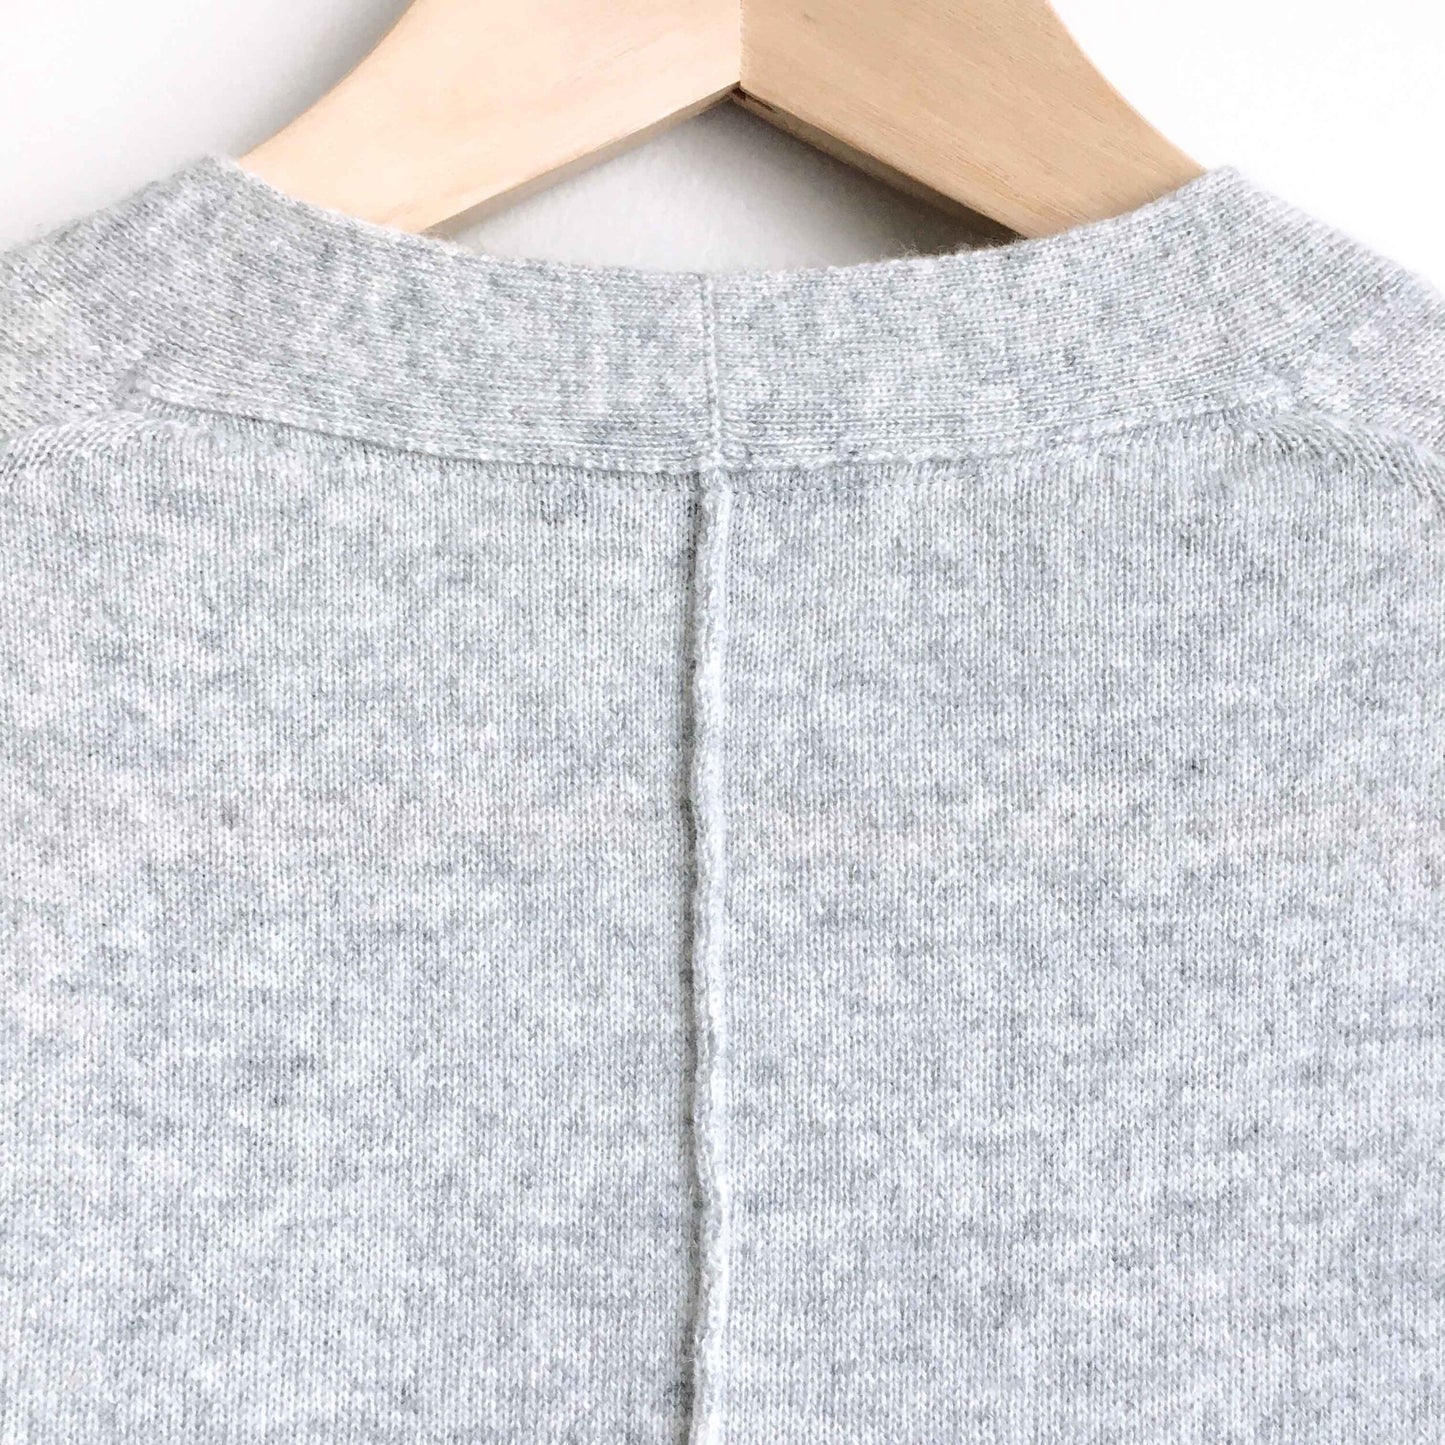 Lafayette 148 cashmere a-line cardigan sweater - size Medium